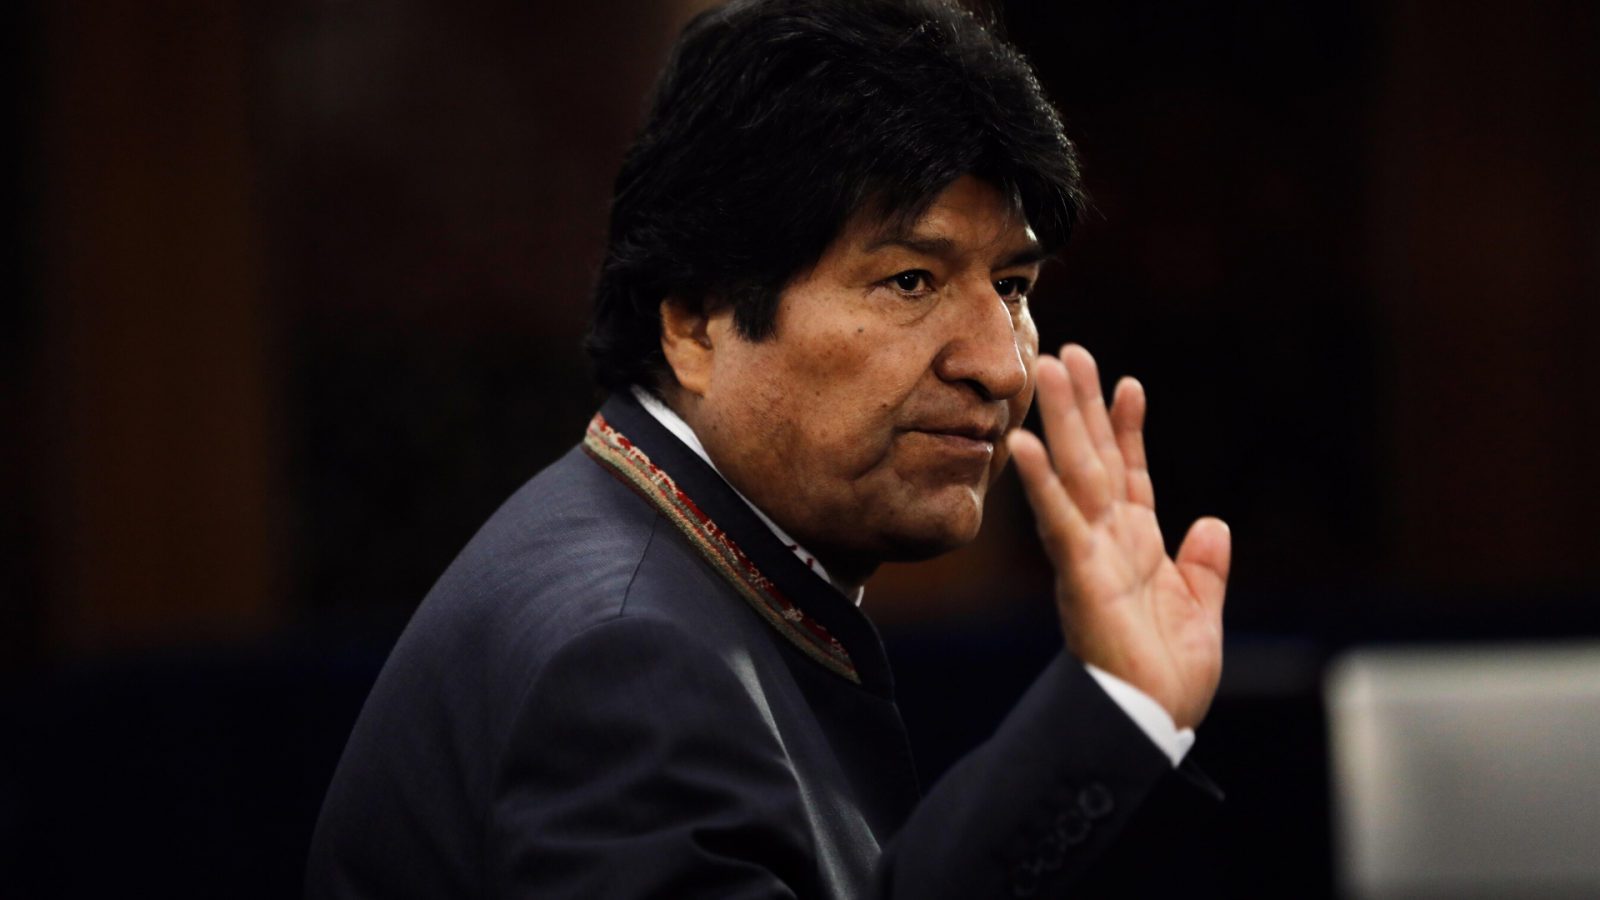 Incertidumbre en Bolivia tras la dimisión de Evo Morales - escuchar ahora